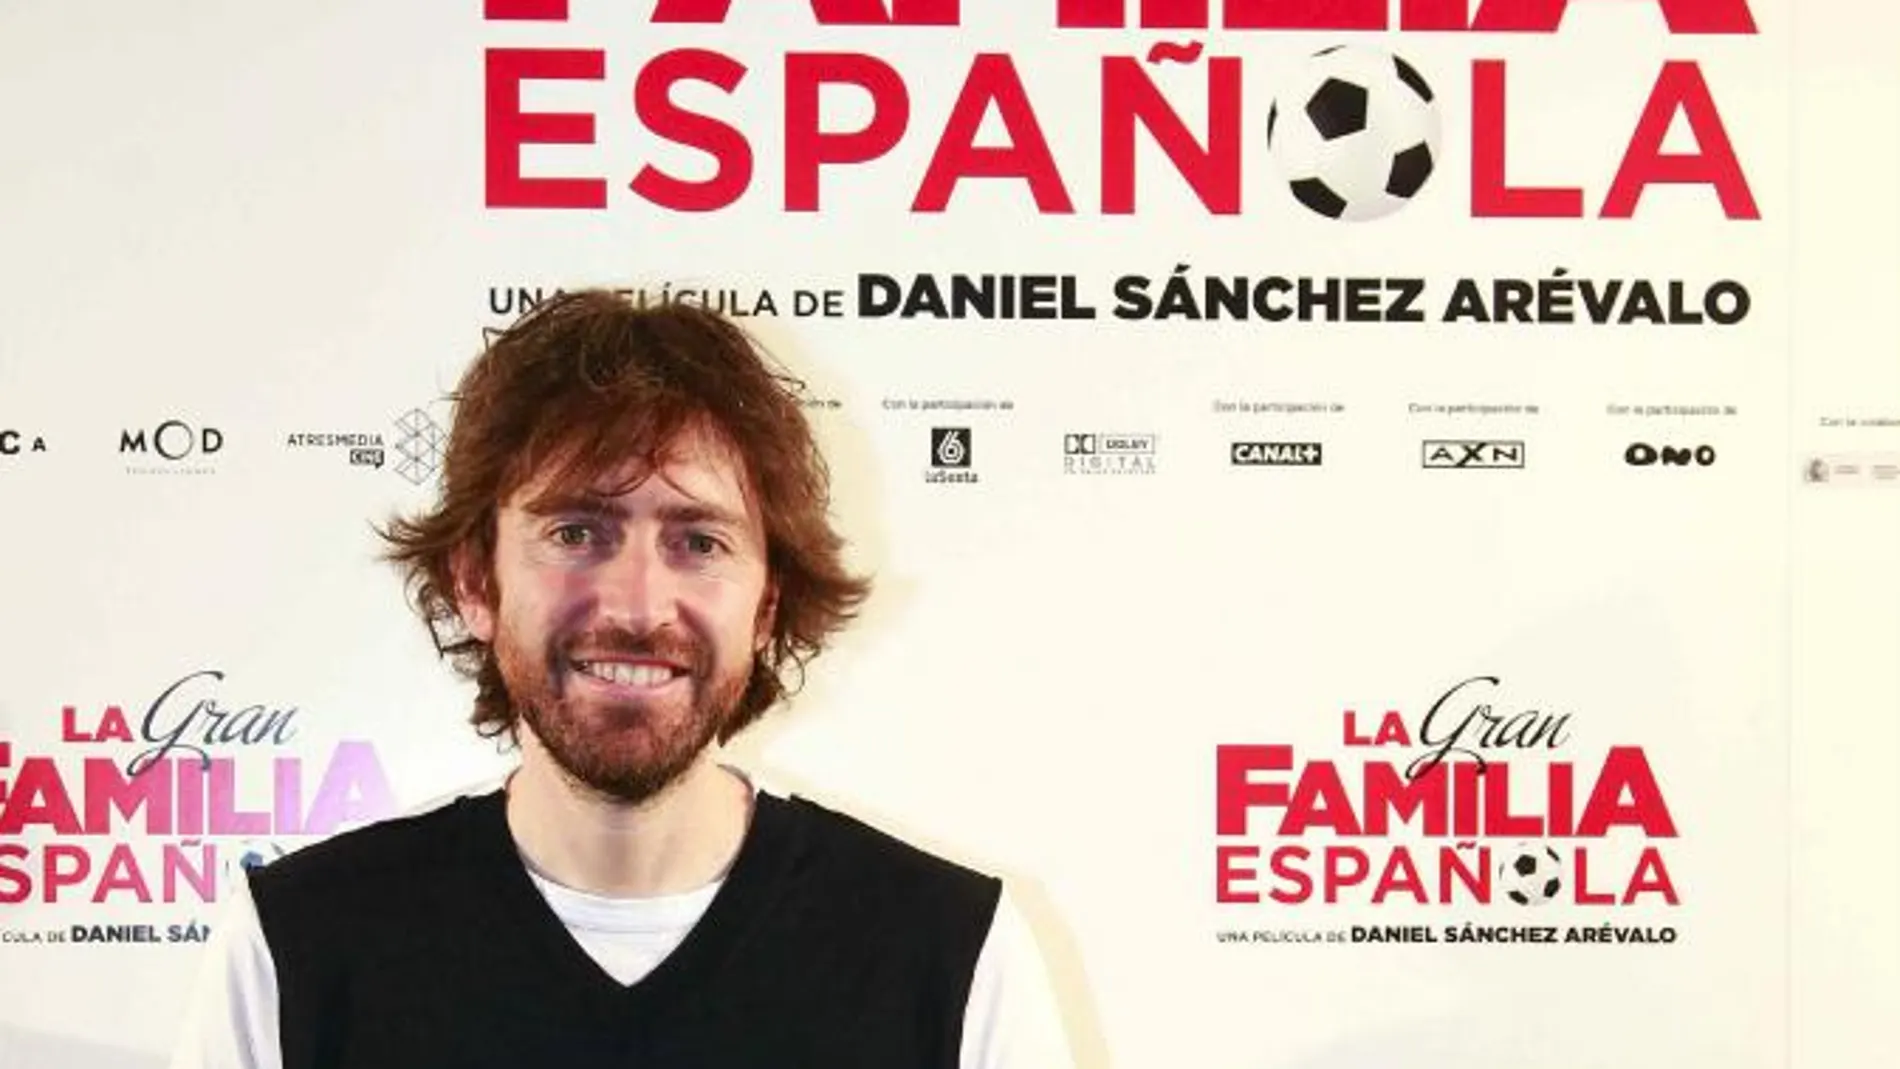 El director de cine Daniel Sánchez Arévalo, hoy en Barcelona, durante la presentación de "La gran familia española", su nueva película. La cinta es una de las cuatro preseleccionadas por la Academia de Cine para optar a representar a España en la carrera por el Óscar.